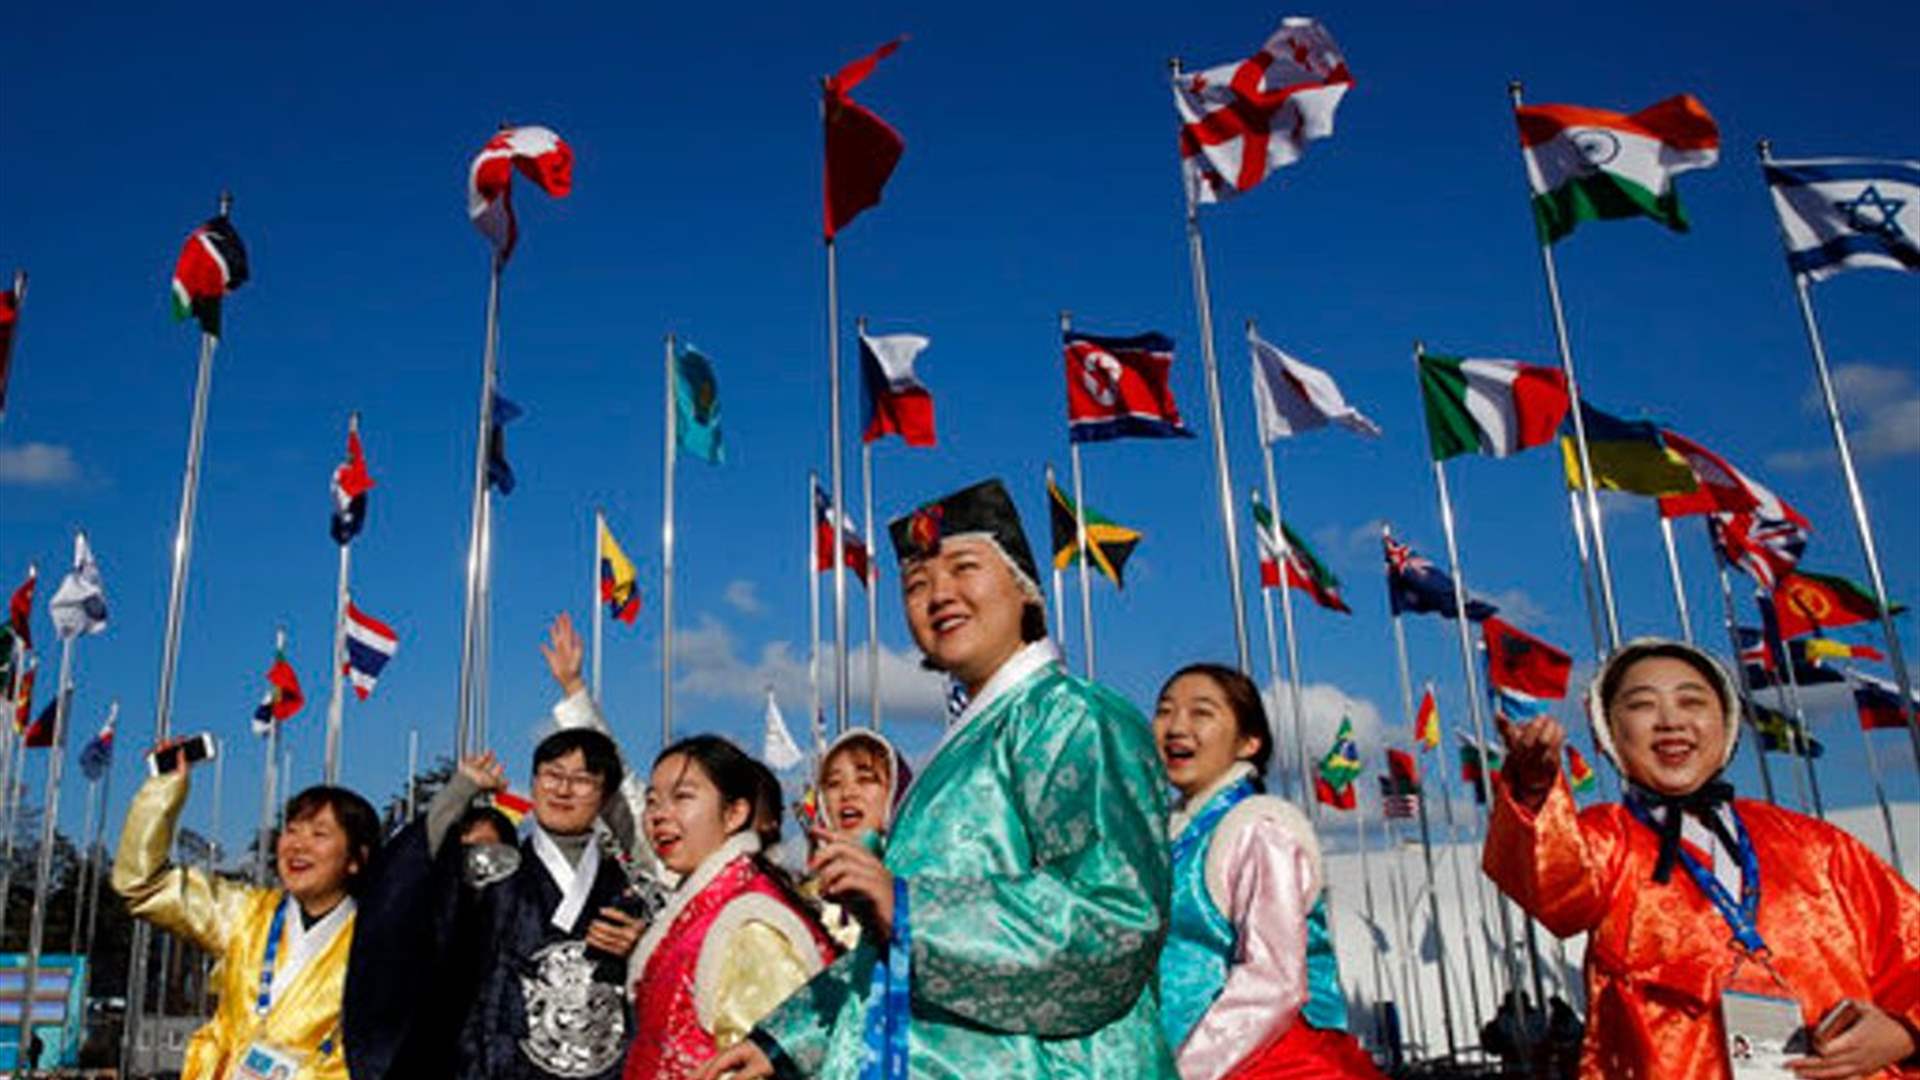 تقديم رياضيي كوريا الجنوبية المشاركين في الألعاب الأولمبية على أنهم من كوريا الشمالية